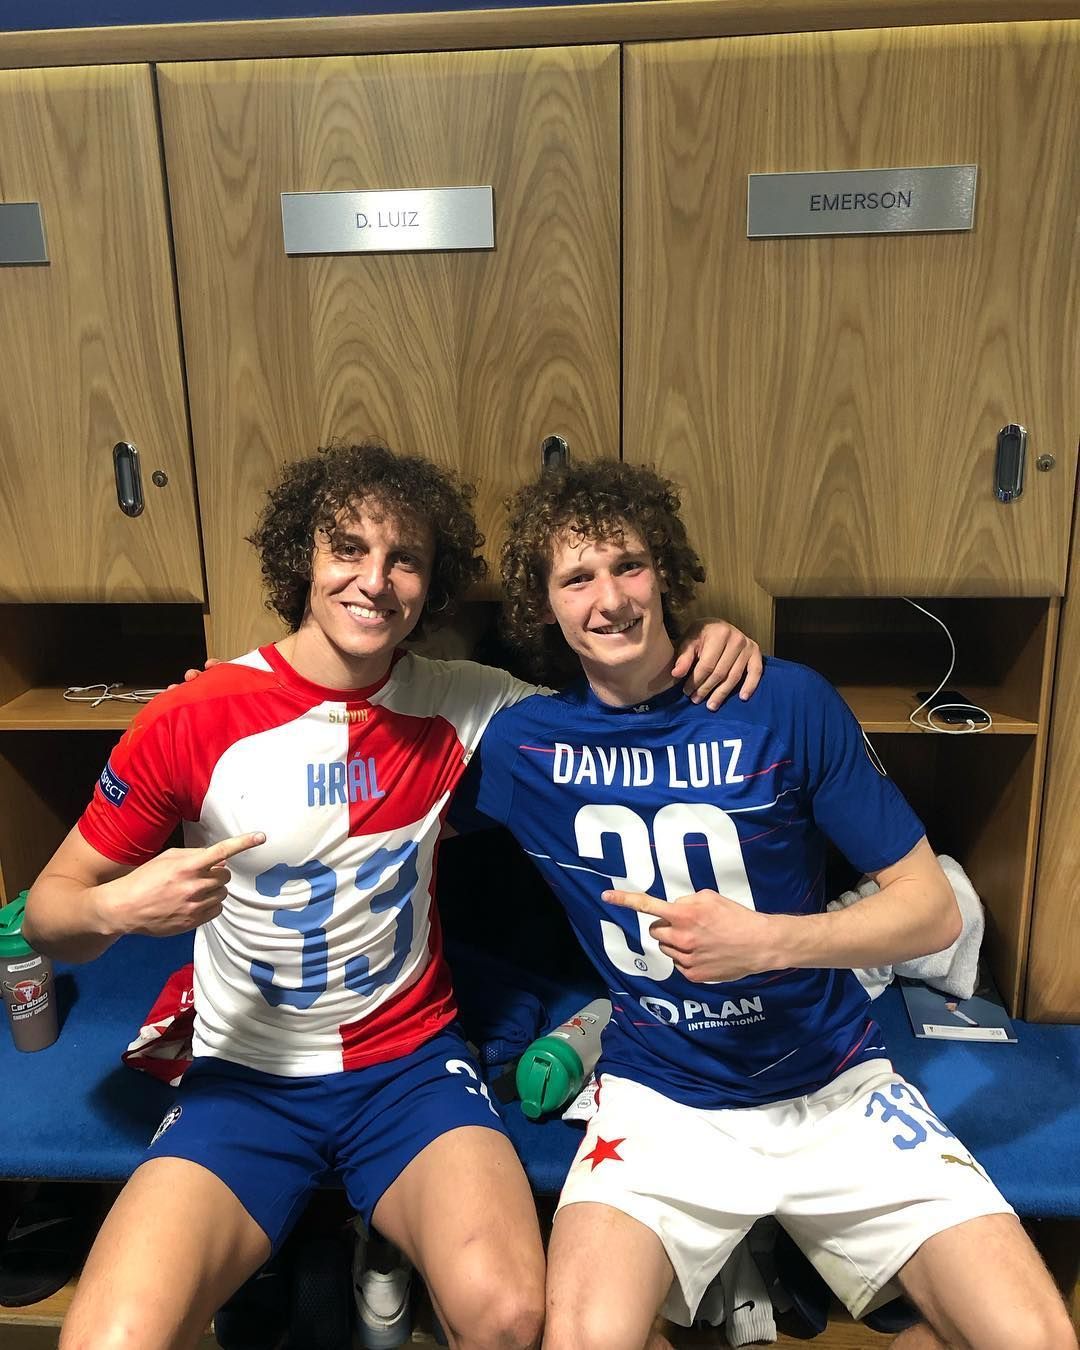 Fotbalisté David Luiz (vlevo) a Alex Král na společné fotografii po odvetném utkání čtvrtfinále Evropské ligy Chelsea - Slavia Praha